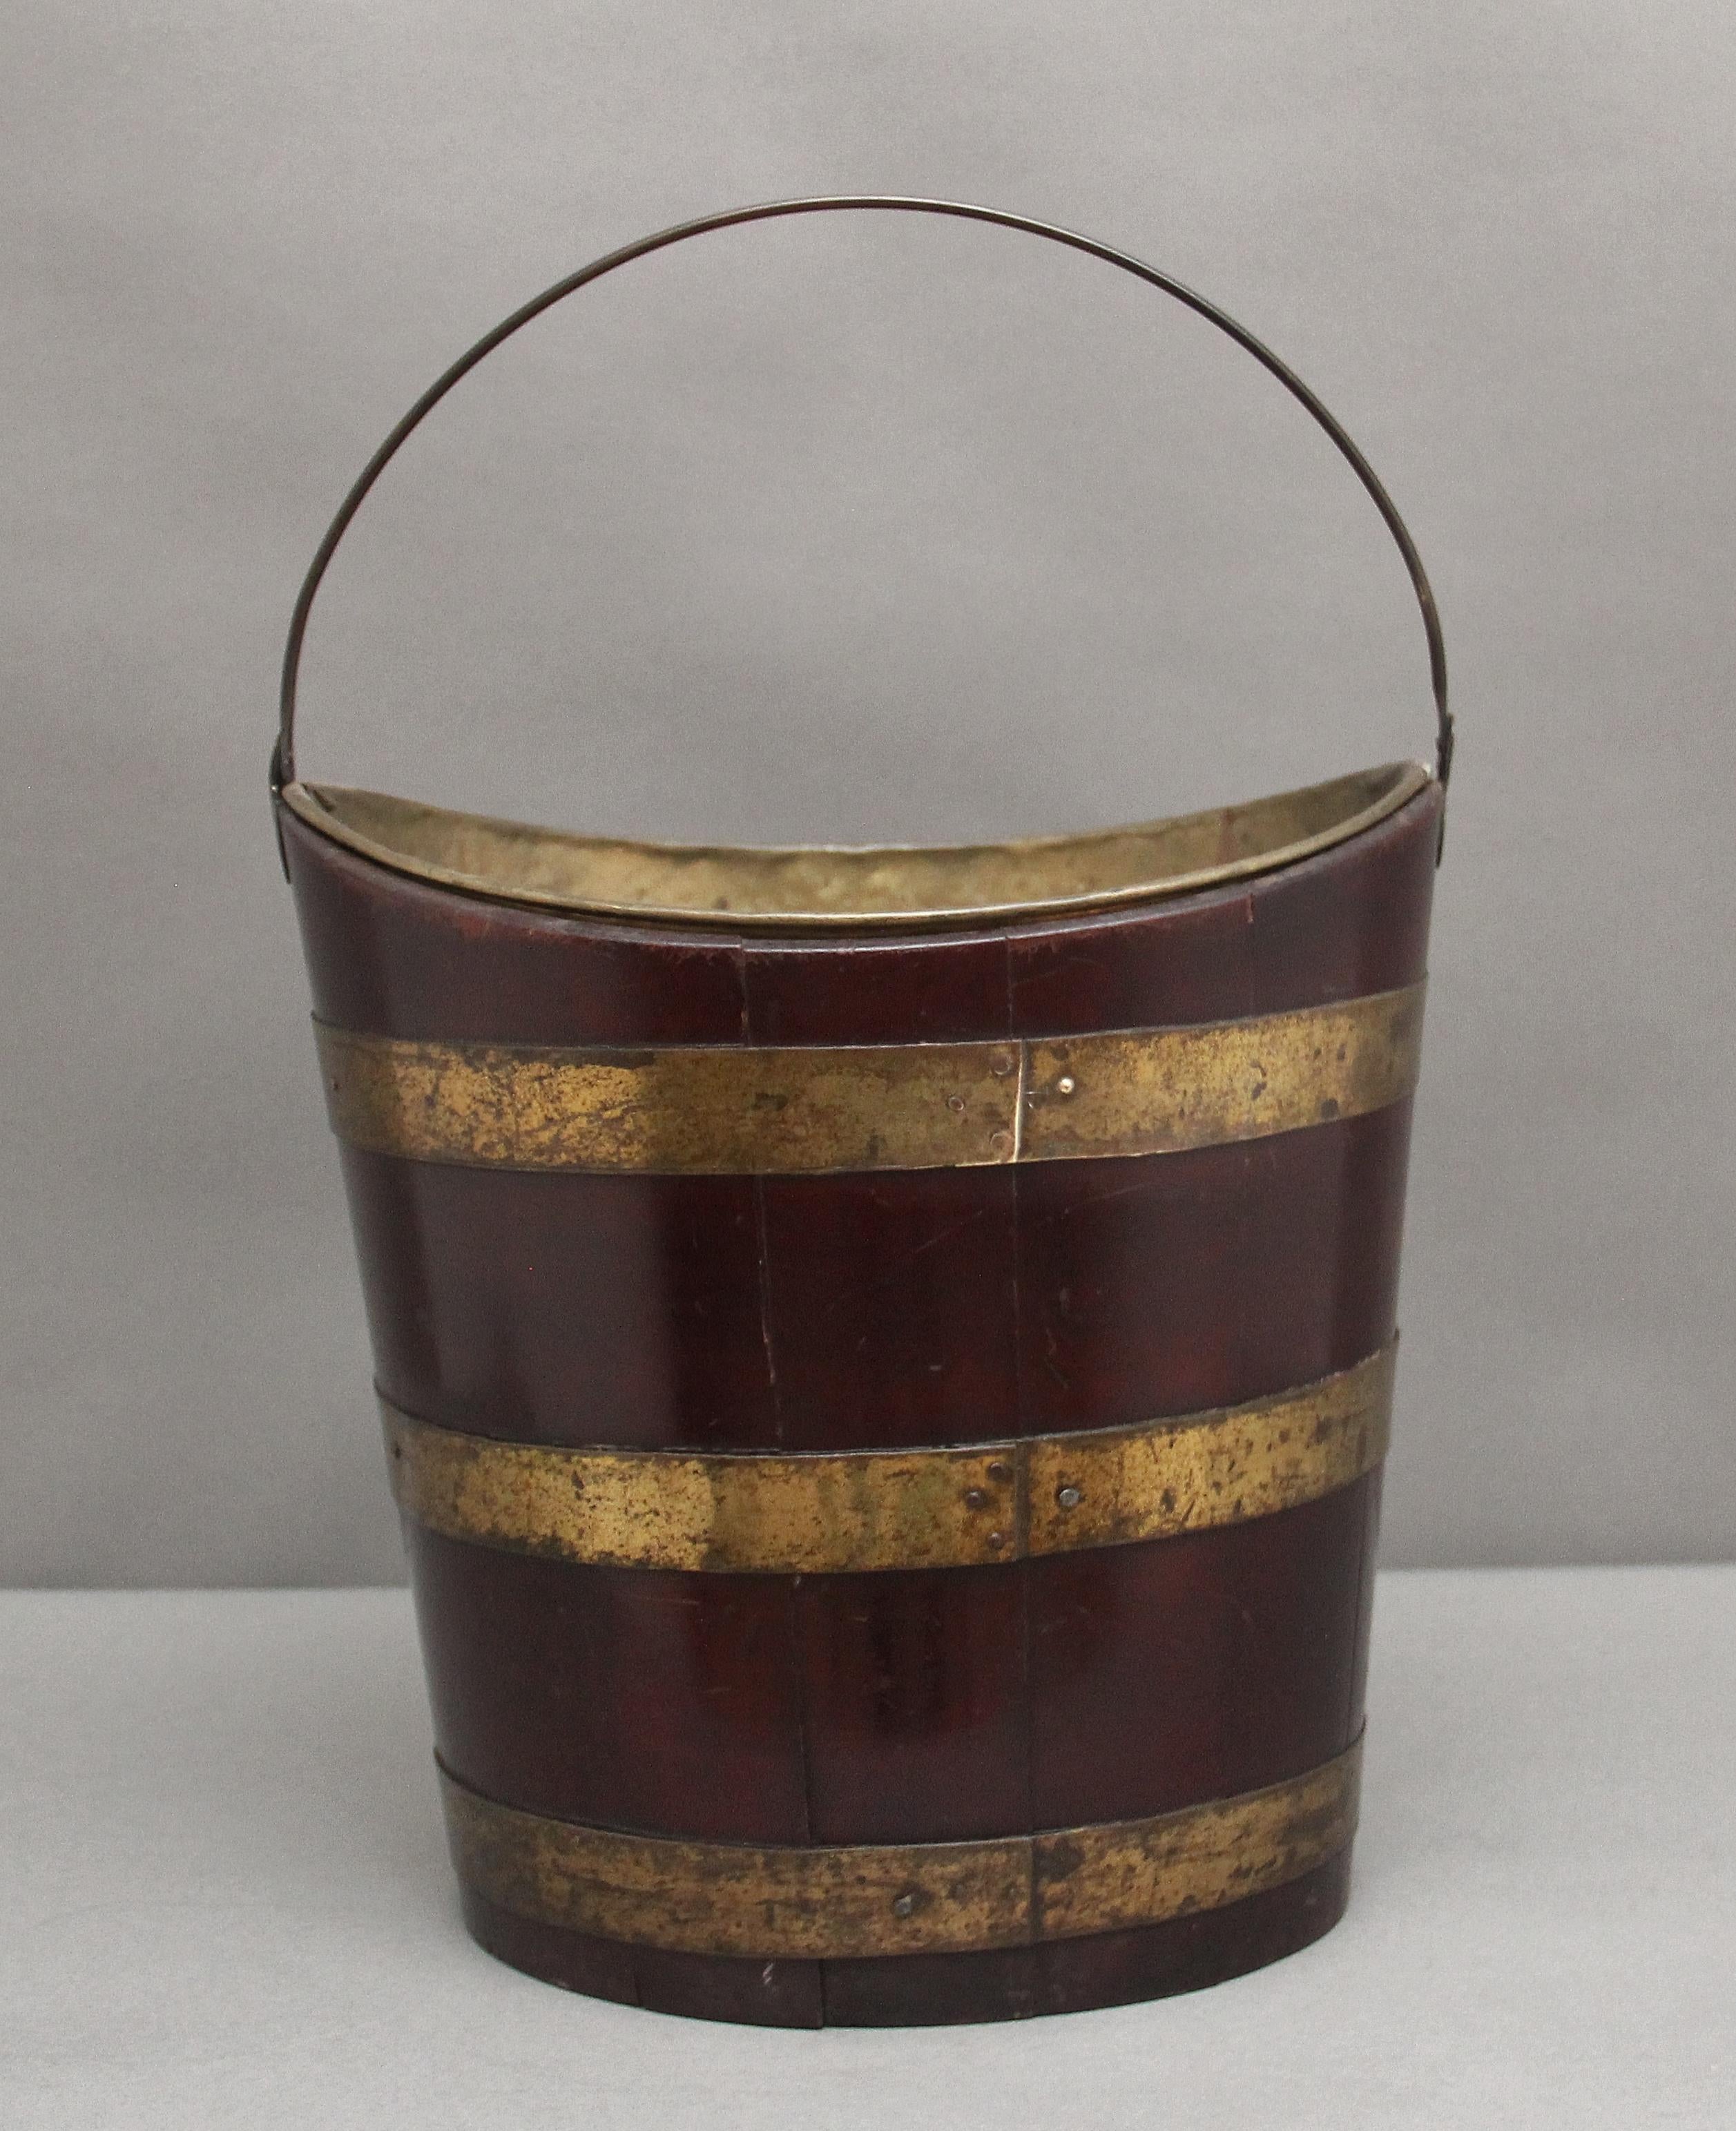 British 19th Century oval brass bound bucket